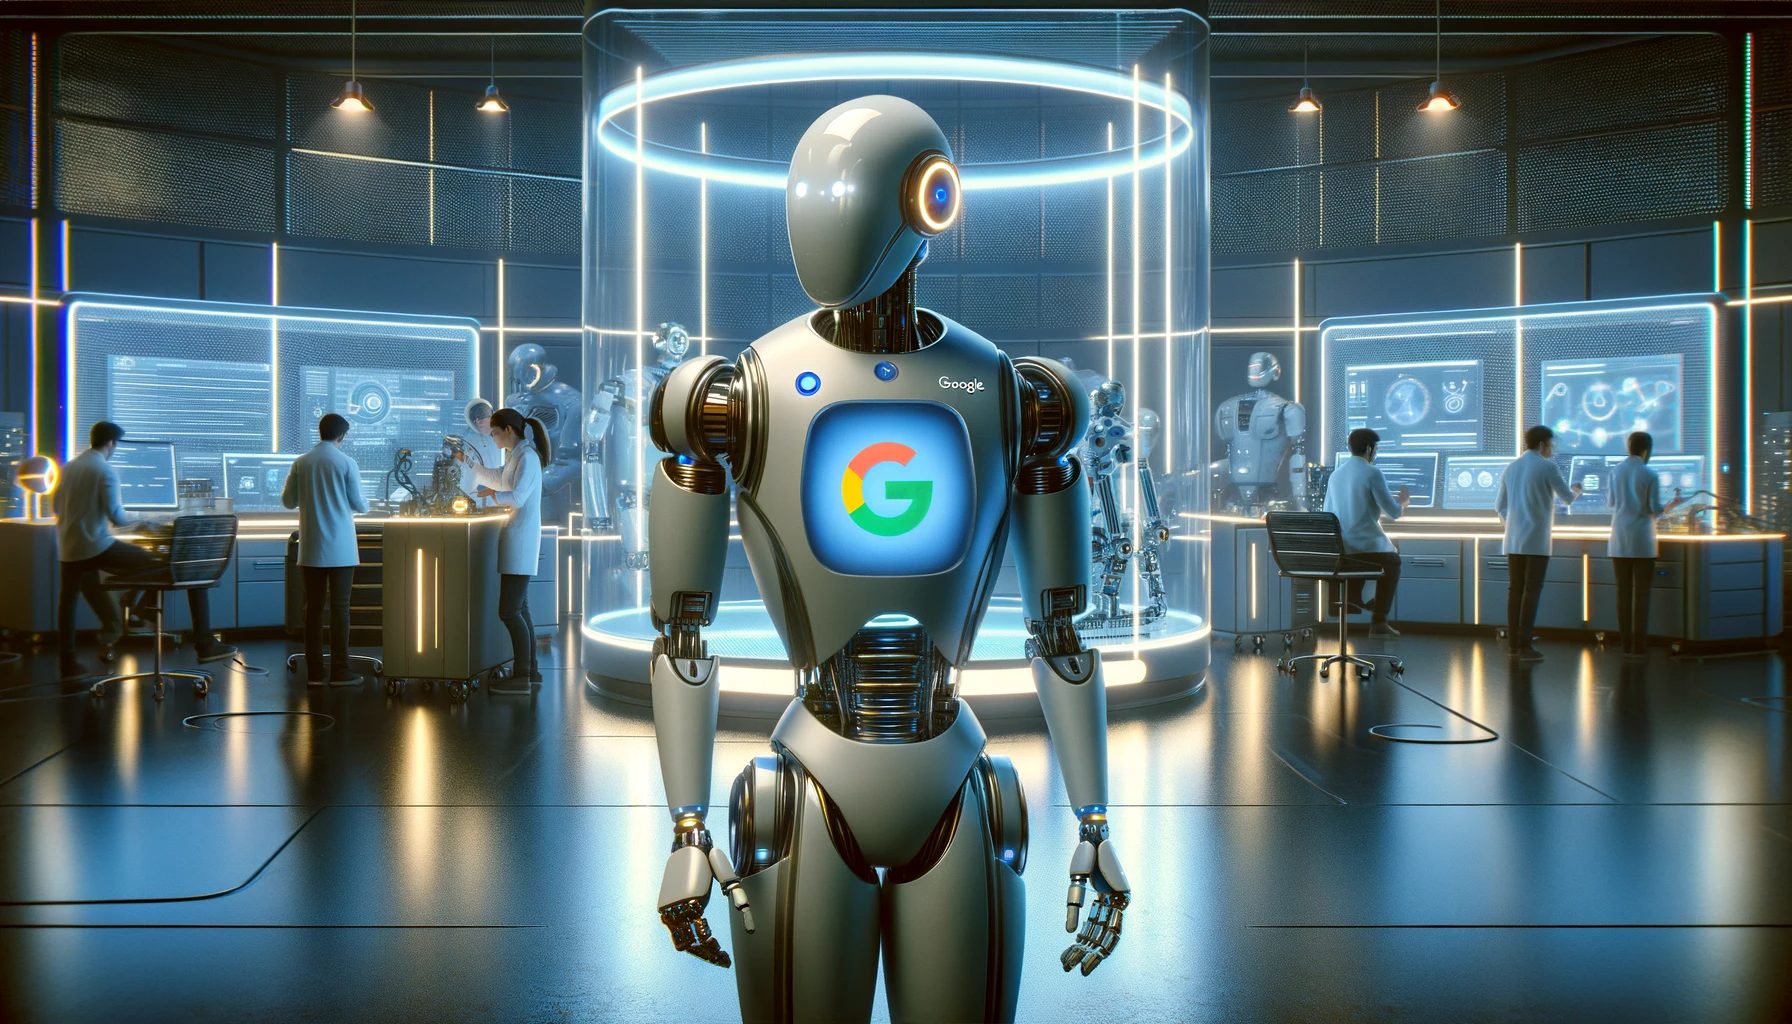 Google SGE robot